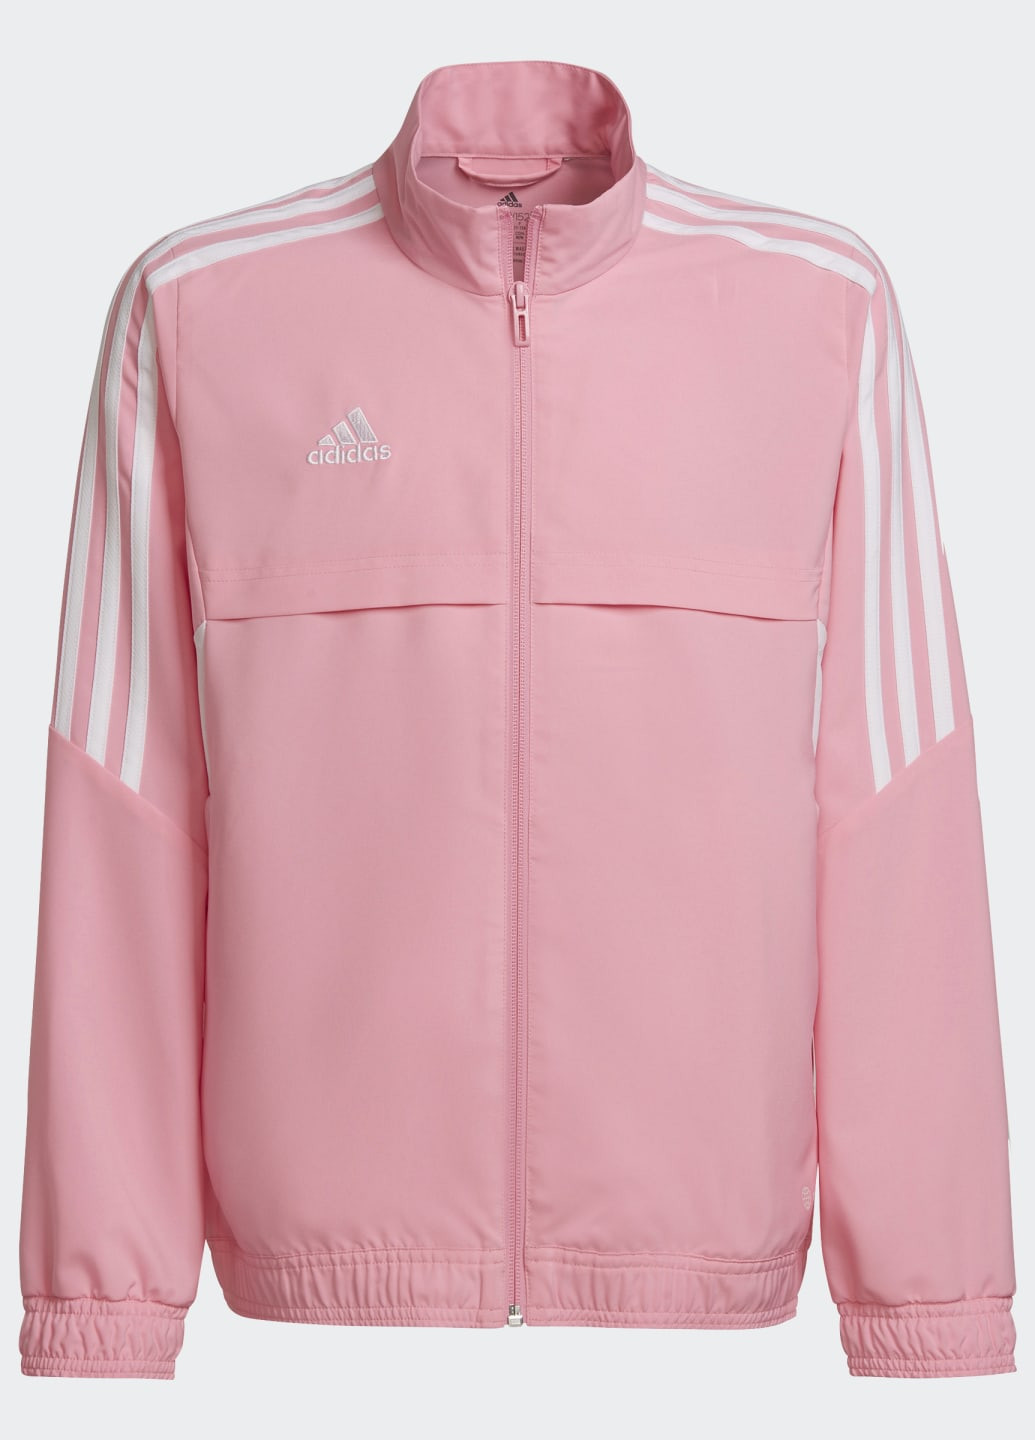 Розовая летняя куртка condivo 22 presantation adidas